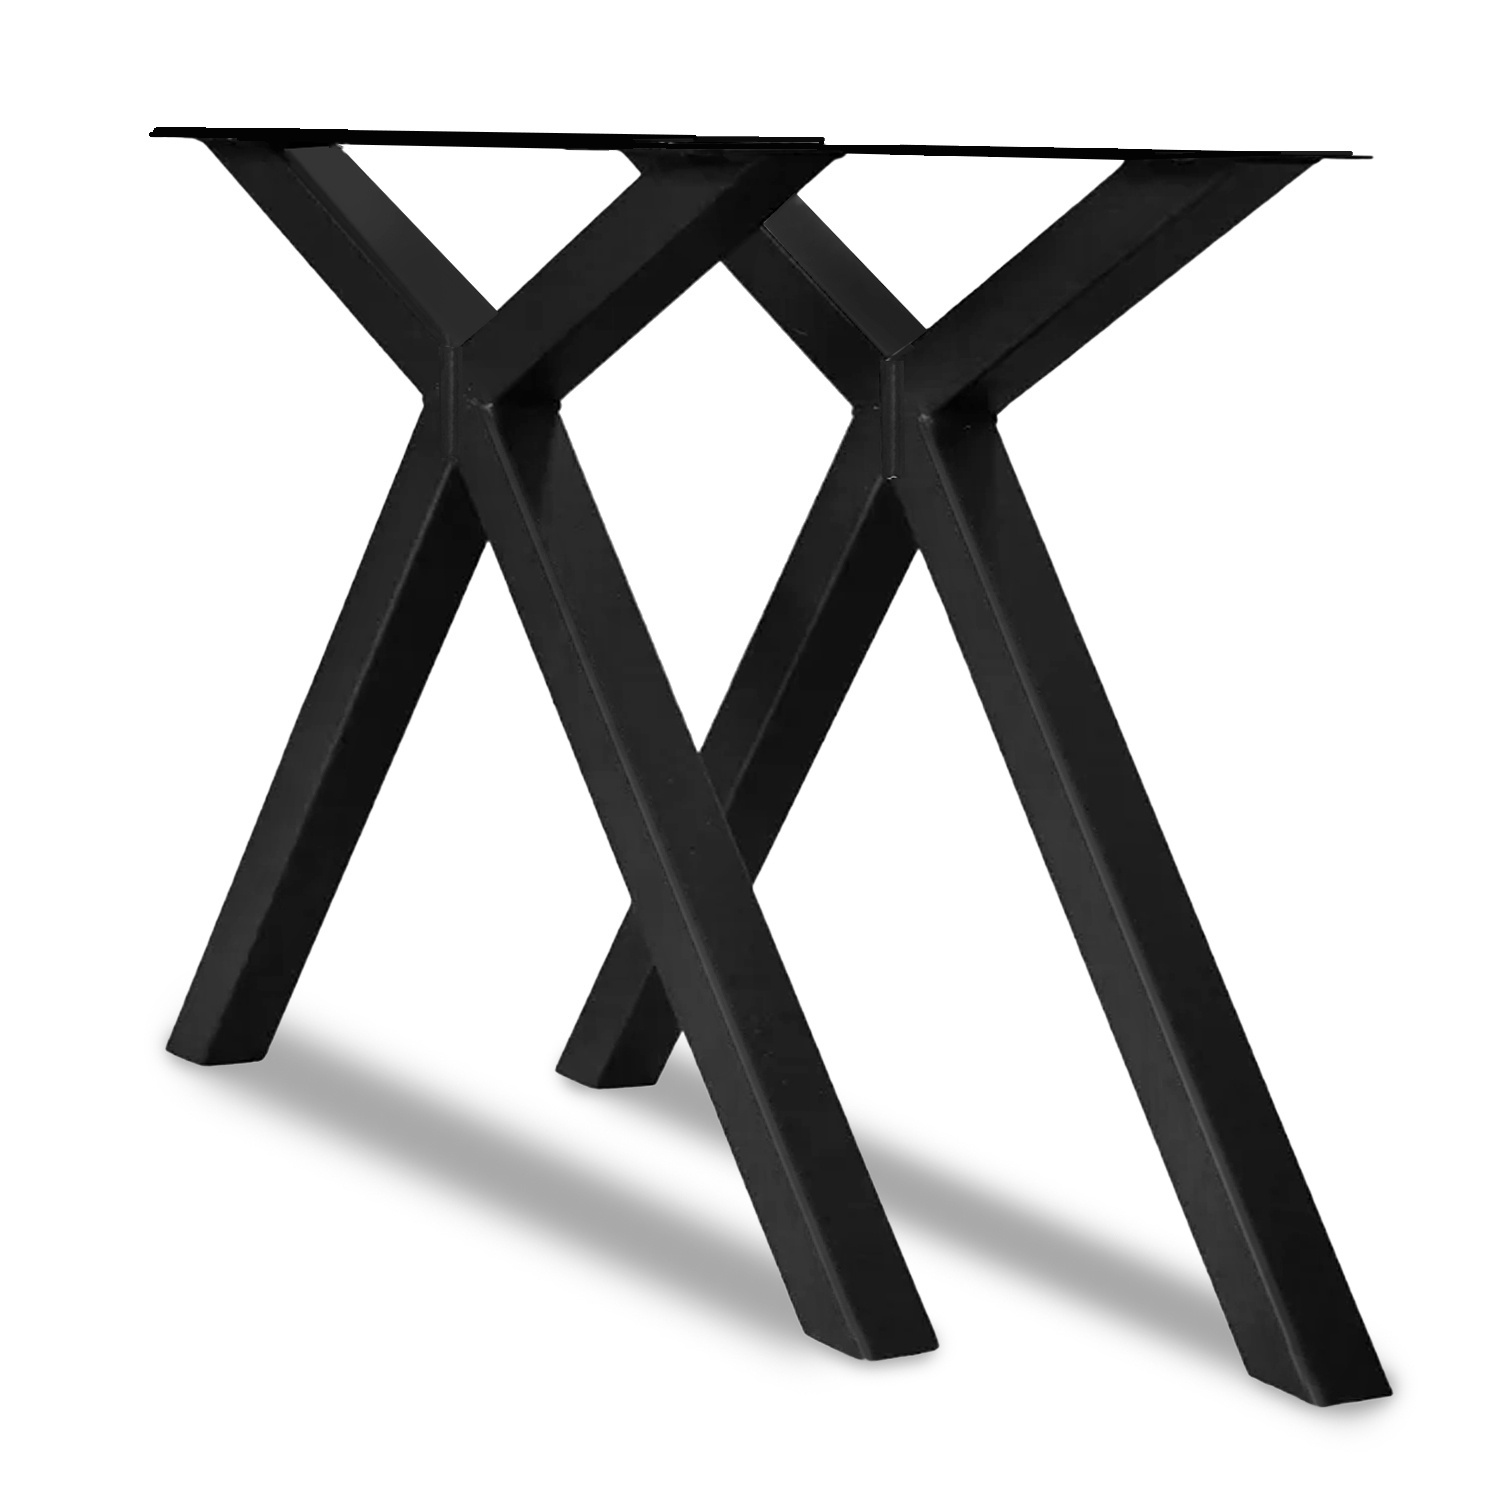  Tischbeine X-Spezial Metall - SET (2 Stück) - 5x5 cm - 78 cm breit - 72 cm hoch - Schere X-form Tischkufen / Tischgestell beschichtet - Schwarz